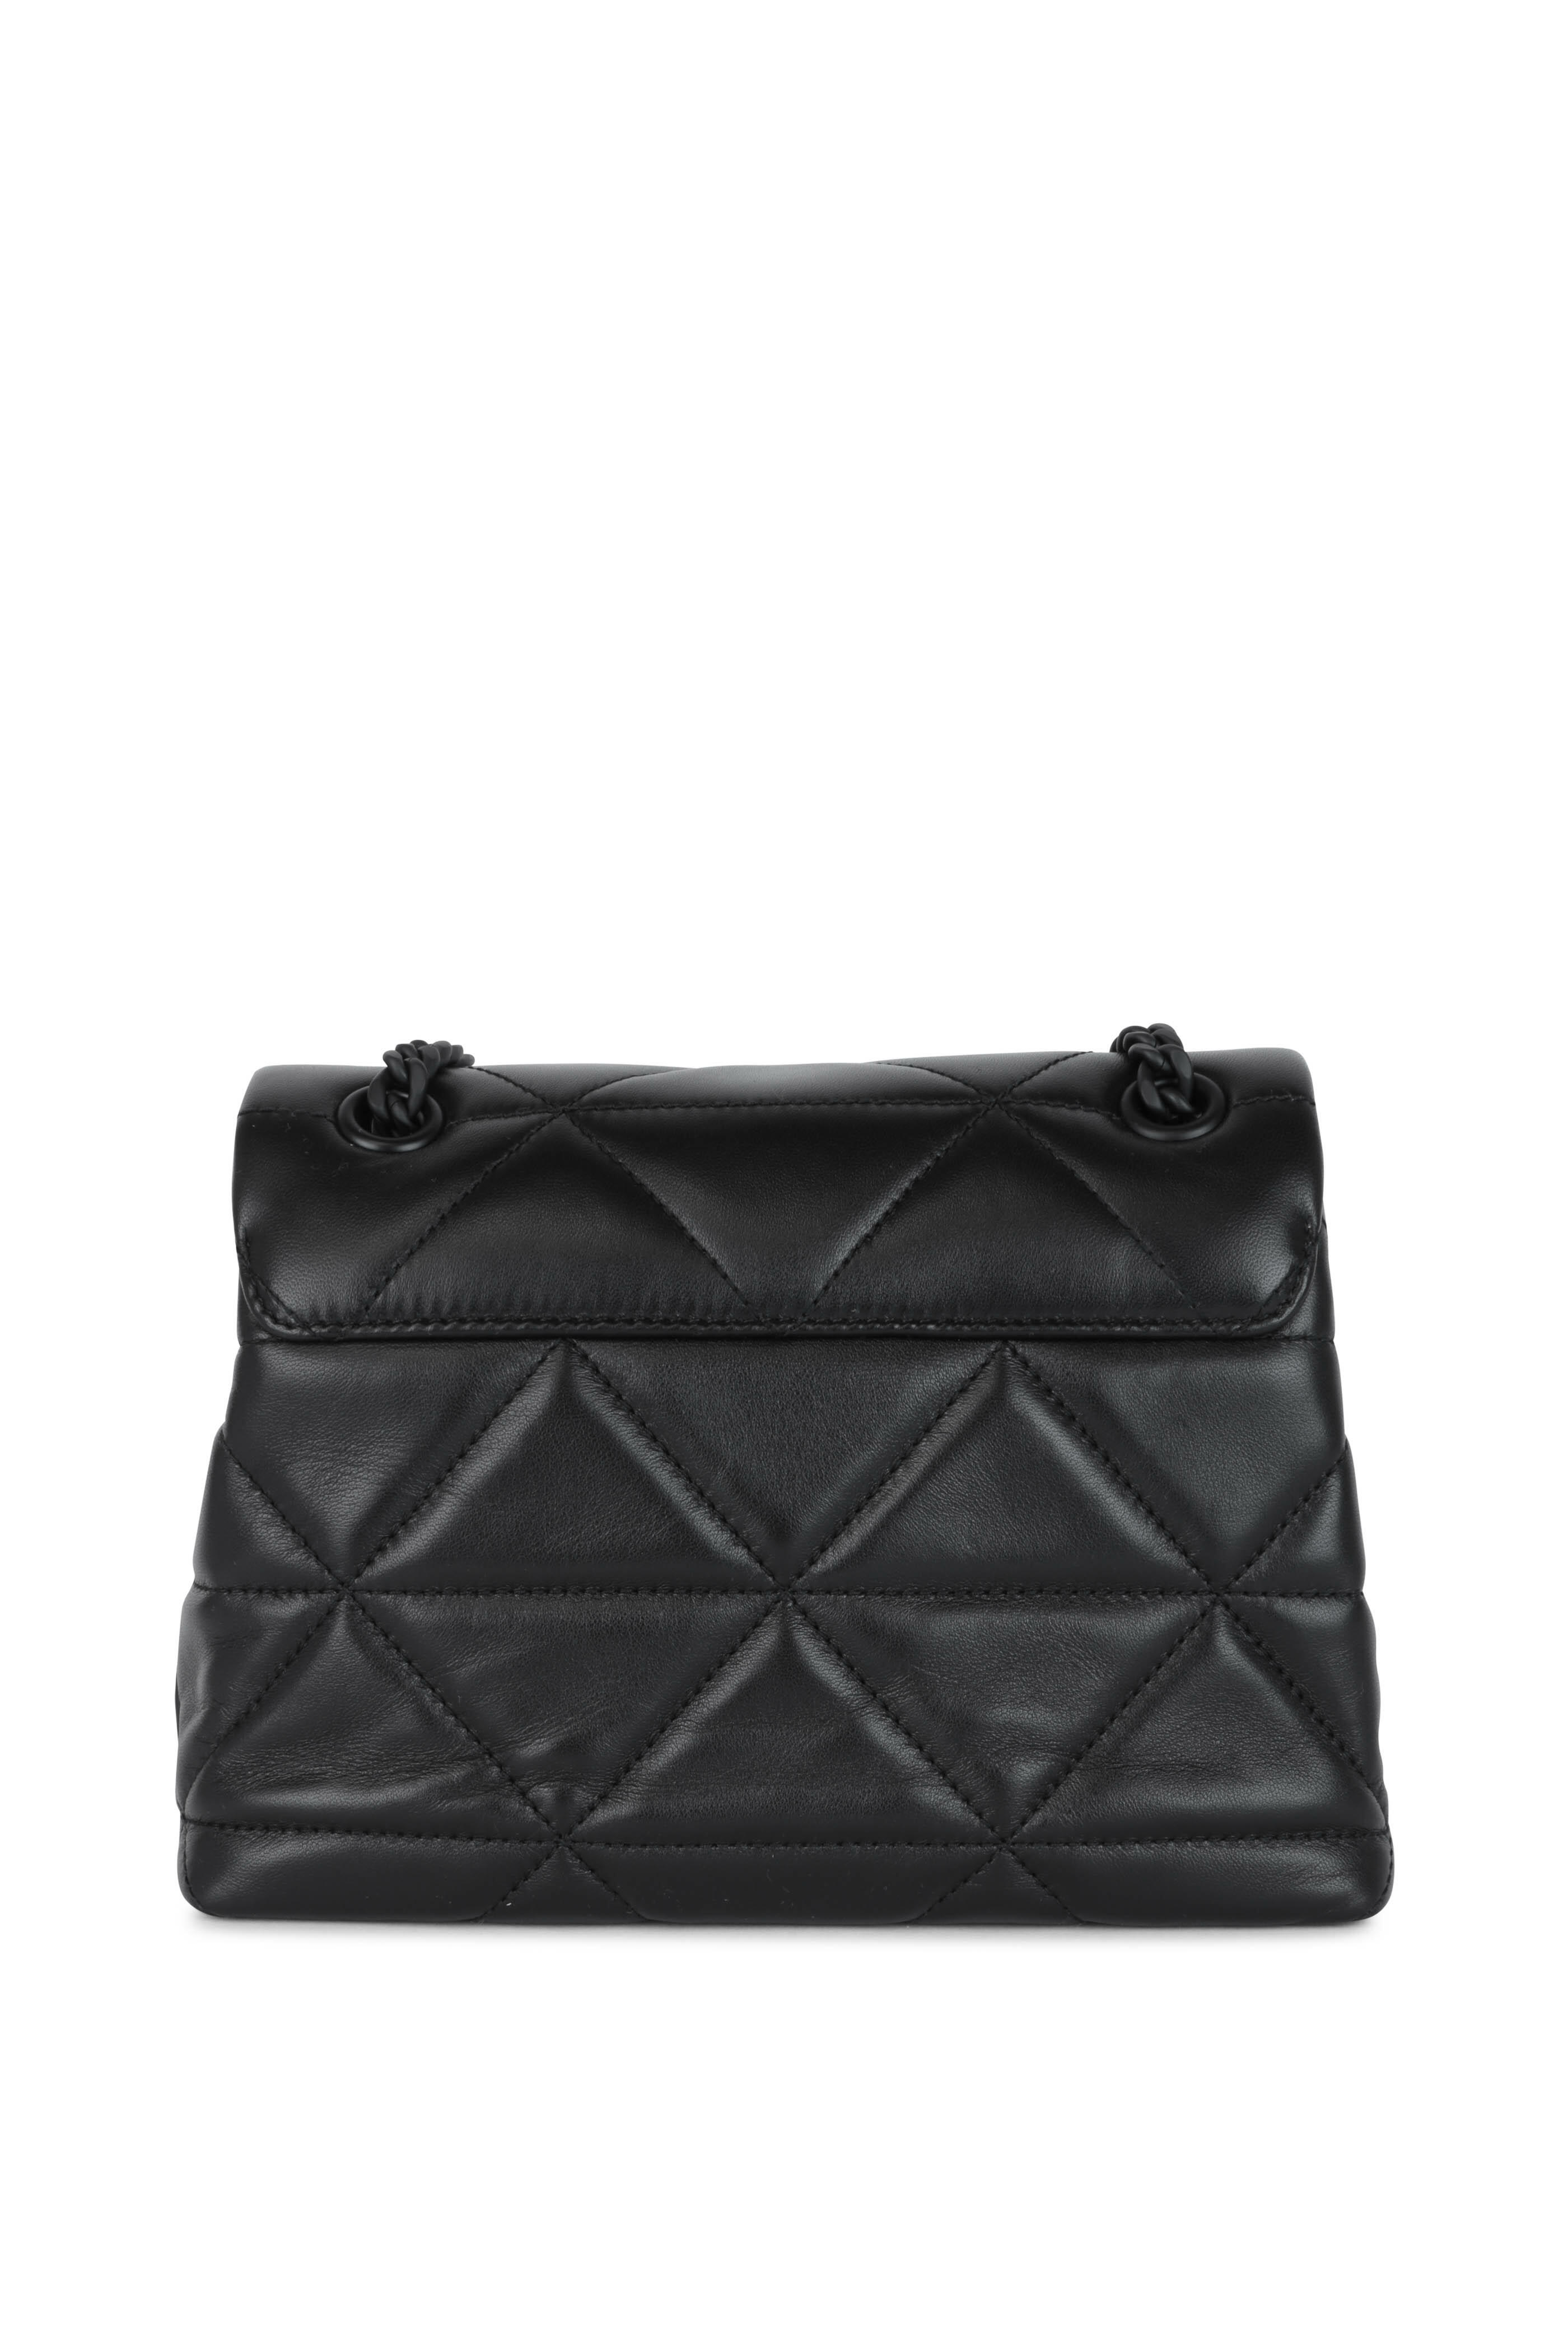 Prada - Spectrum Black Leather Quilted Shoulder Bag